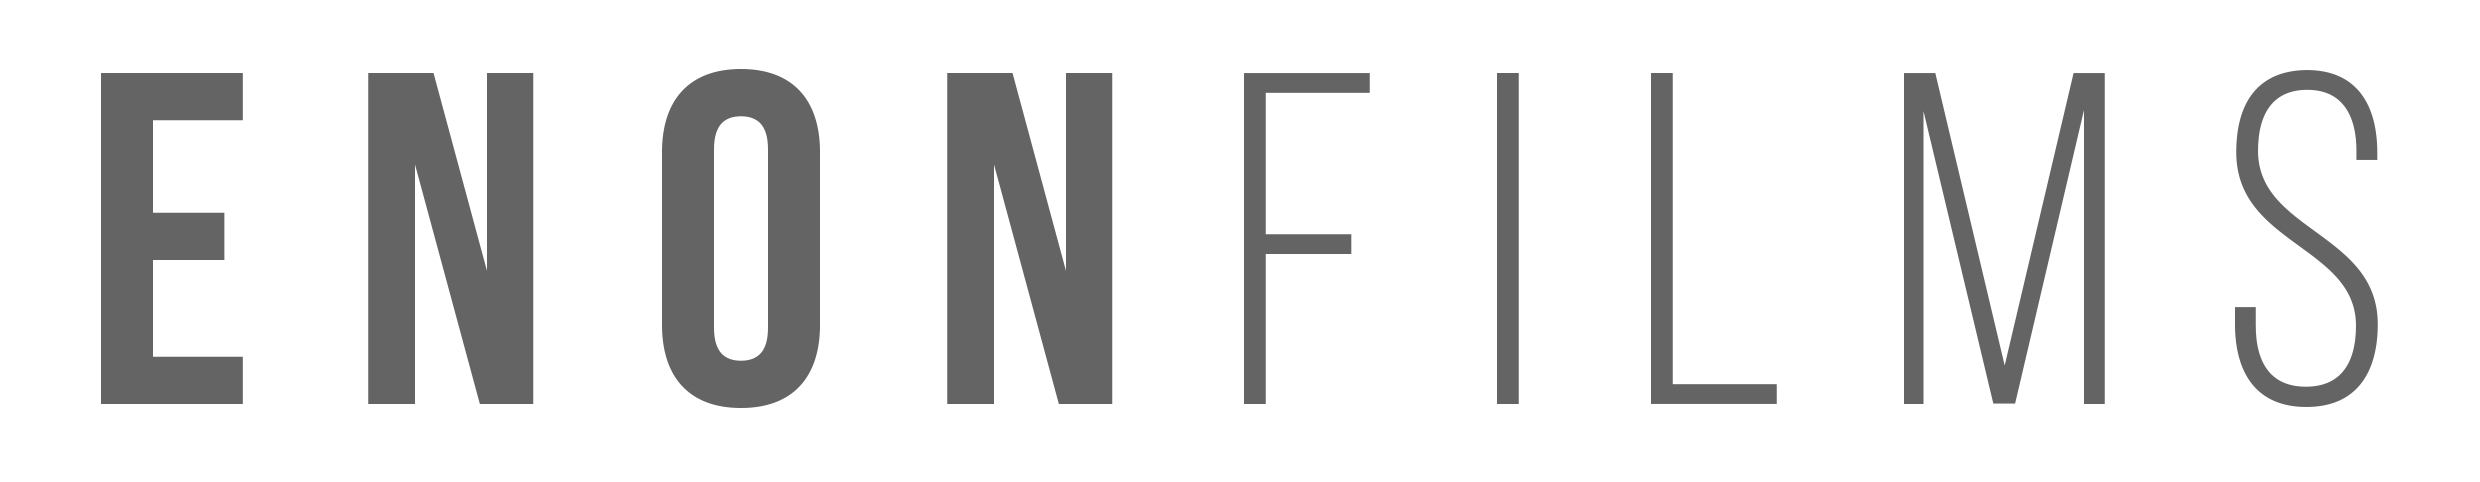 Enon Films Logo